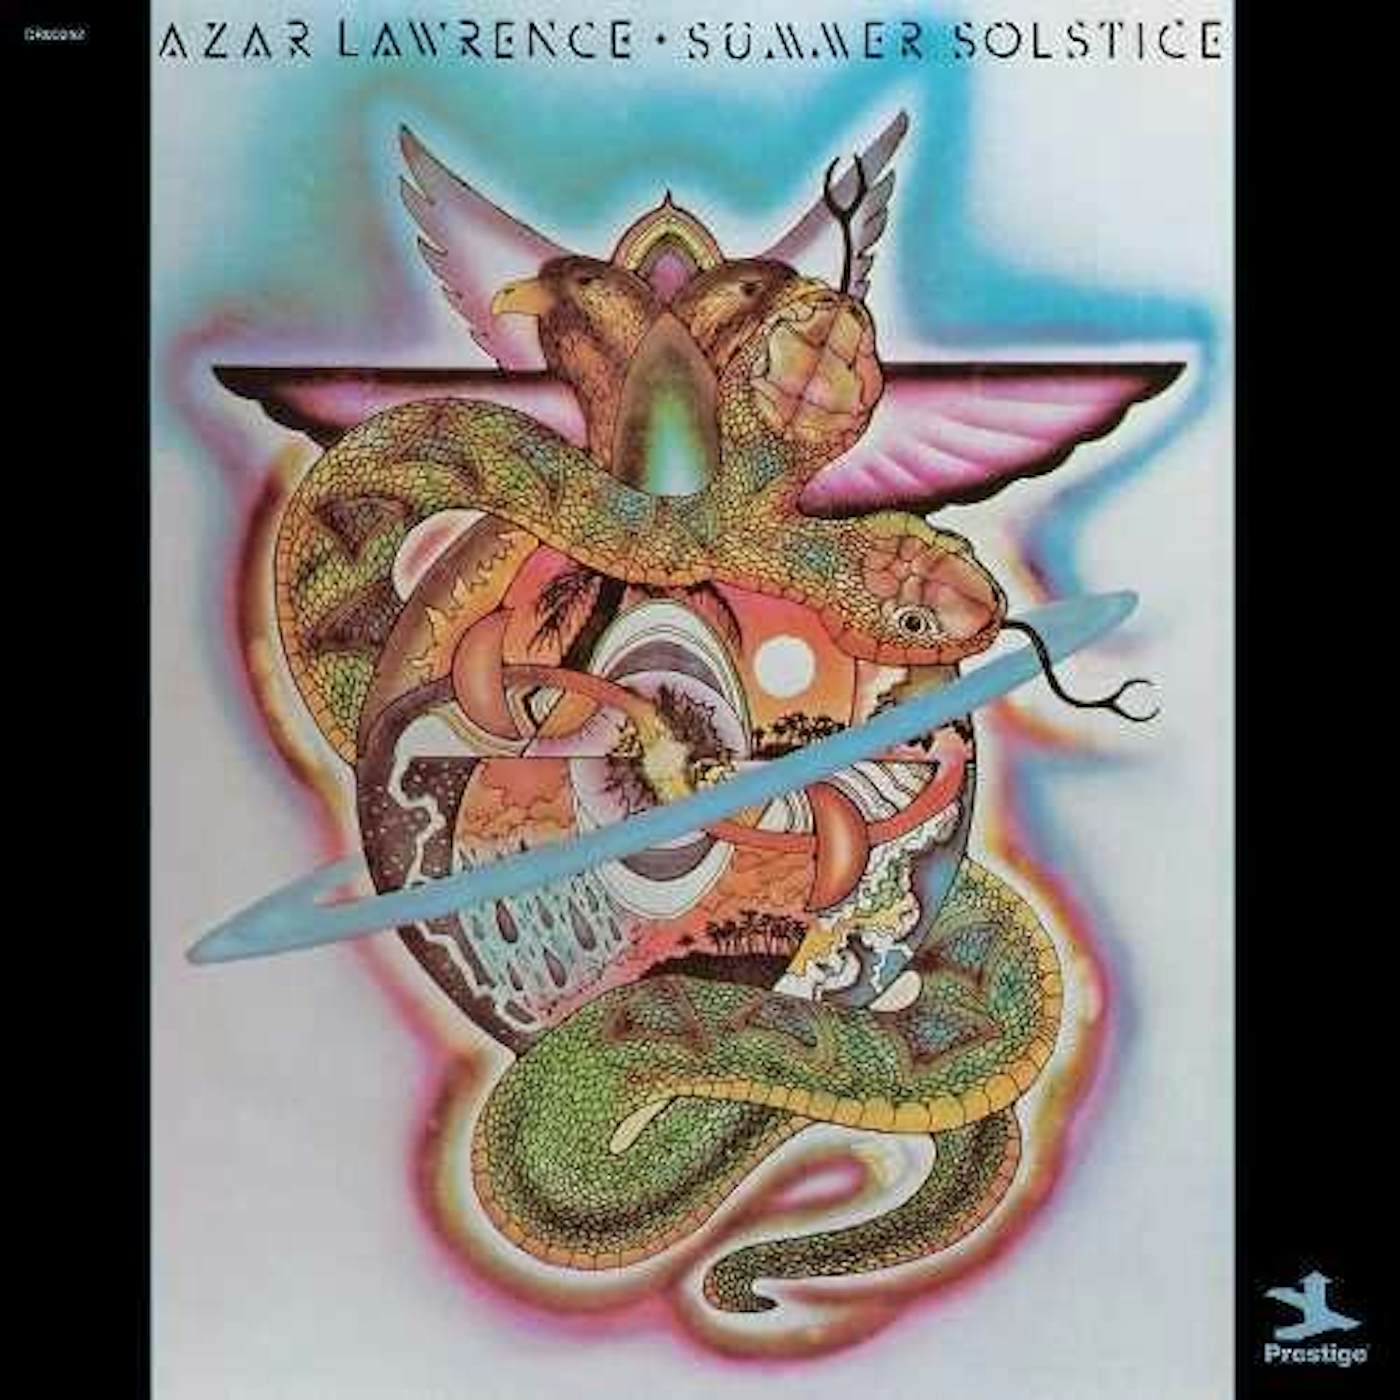 Azar Lawrence Summer Solstice Vinyl Record